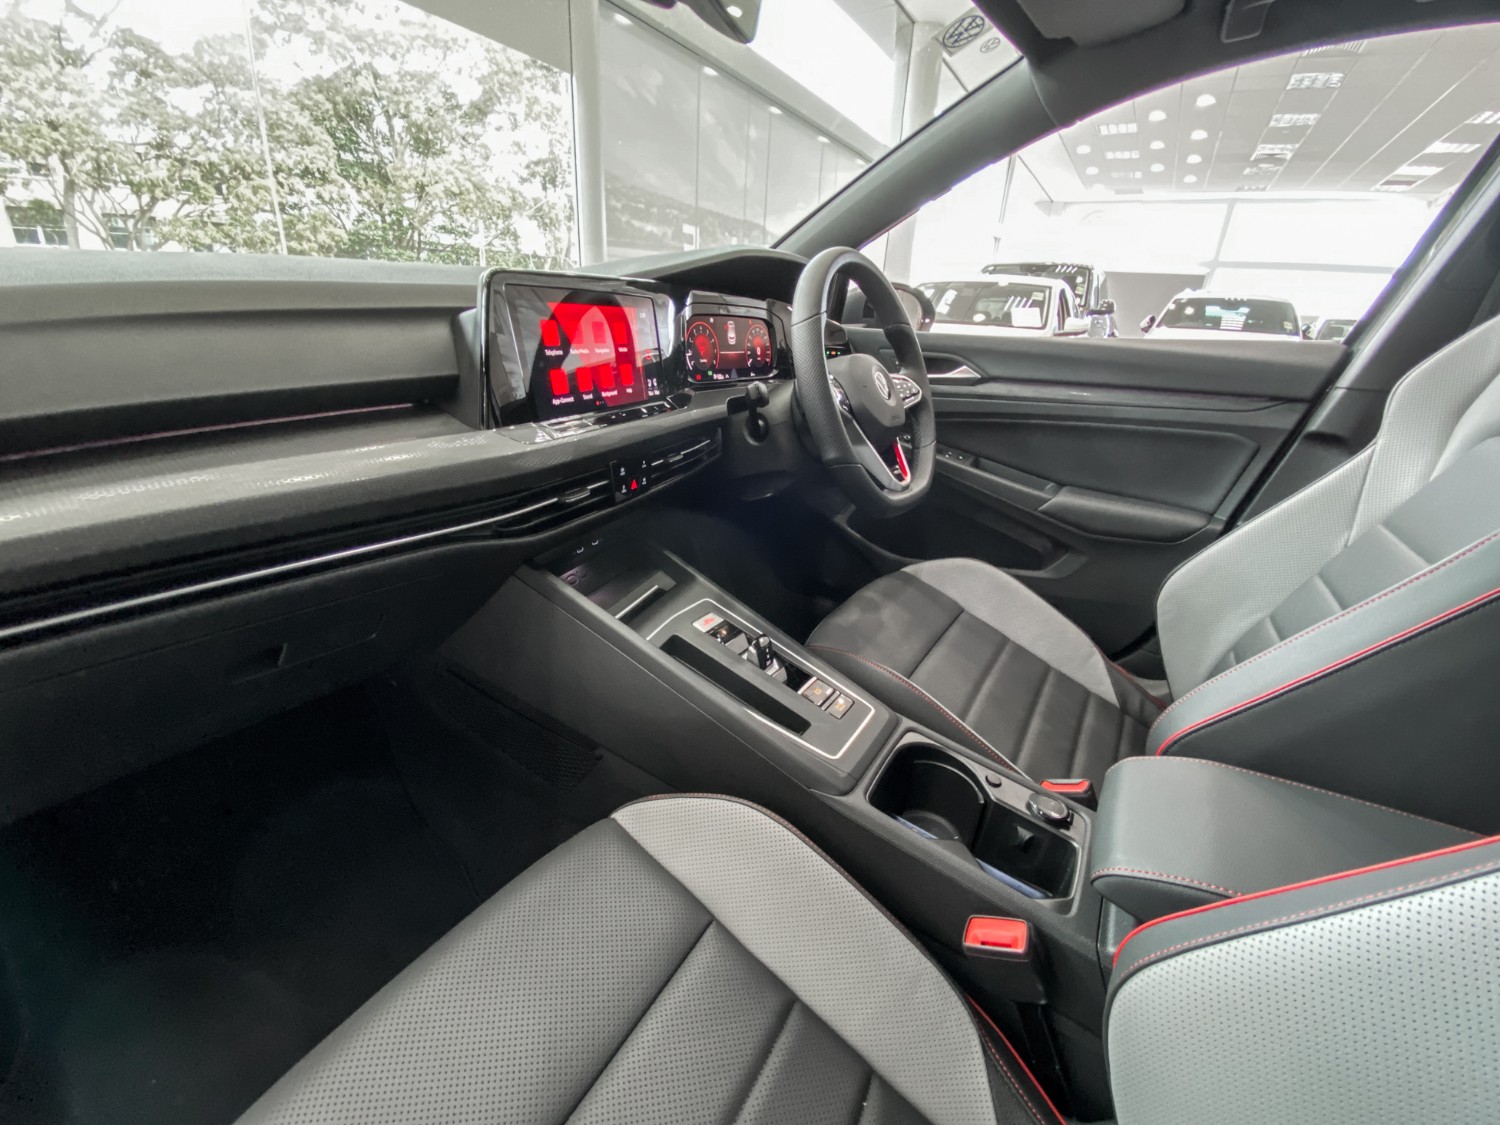 2021 Volkswagen Golf 8 GTI 7Spd DSG Hatch Image 8